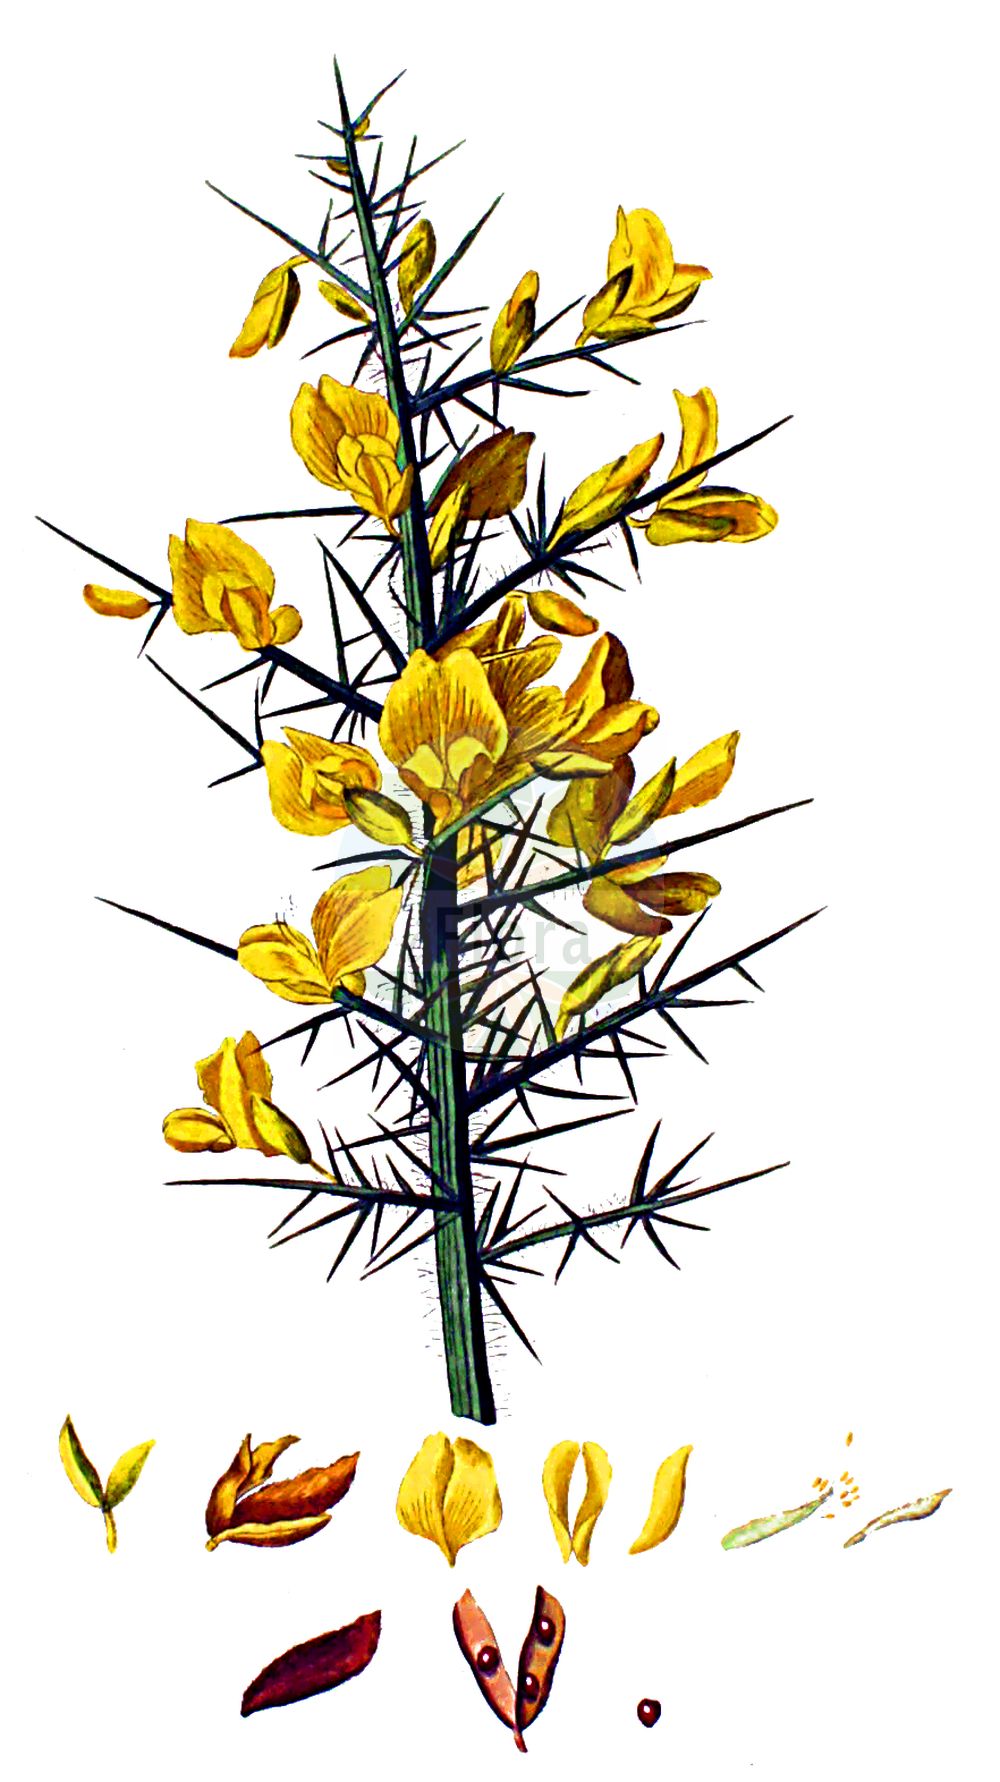 Historische Abbildung von Ulex europaeus (Europäischer Stechginster - Gorse). Das Bild zeigt Blatt, Bluete, Frucht und Same. ---- Historical Drawing of Ulex europaeus (Europäischer Stechginster - Gorse). The image is showing leaf, flower, fruit and seed.(Ulex europaeus,Europäischer Stechginster,Gorse,Ulex armoricanus,Ulex compositus,Ulex europaeus,Ulex floridus,Ulex hibernicus,Ulex major,Ulex strictus,Ulex vernalis,Europaeischer Stechginster,Gaspeldorn,Gewoehnlicher Stechginster,Heckensame,Stechginster,Gorse,Common Furze,Common Gorse,Corse,Furze,Whin,Ulex,Stechginster,Gorse,Fabaceae,Schmetterlingsblütler,Pea family,Blatt,Bluete,Frucht,Same,leaf,flower,fruit,seed,Kops (1800-1934))